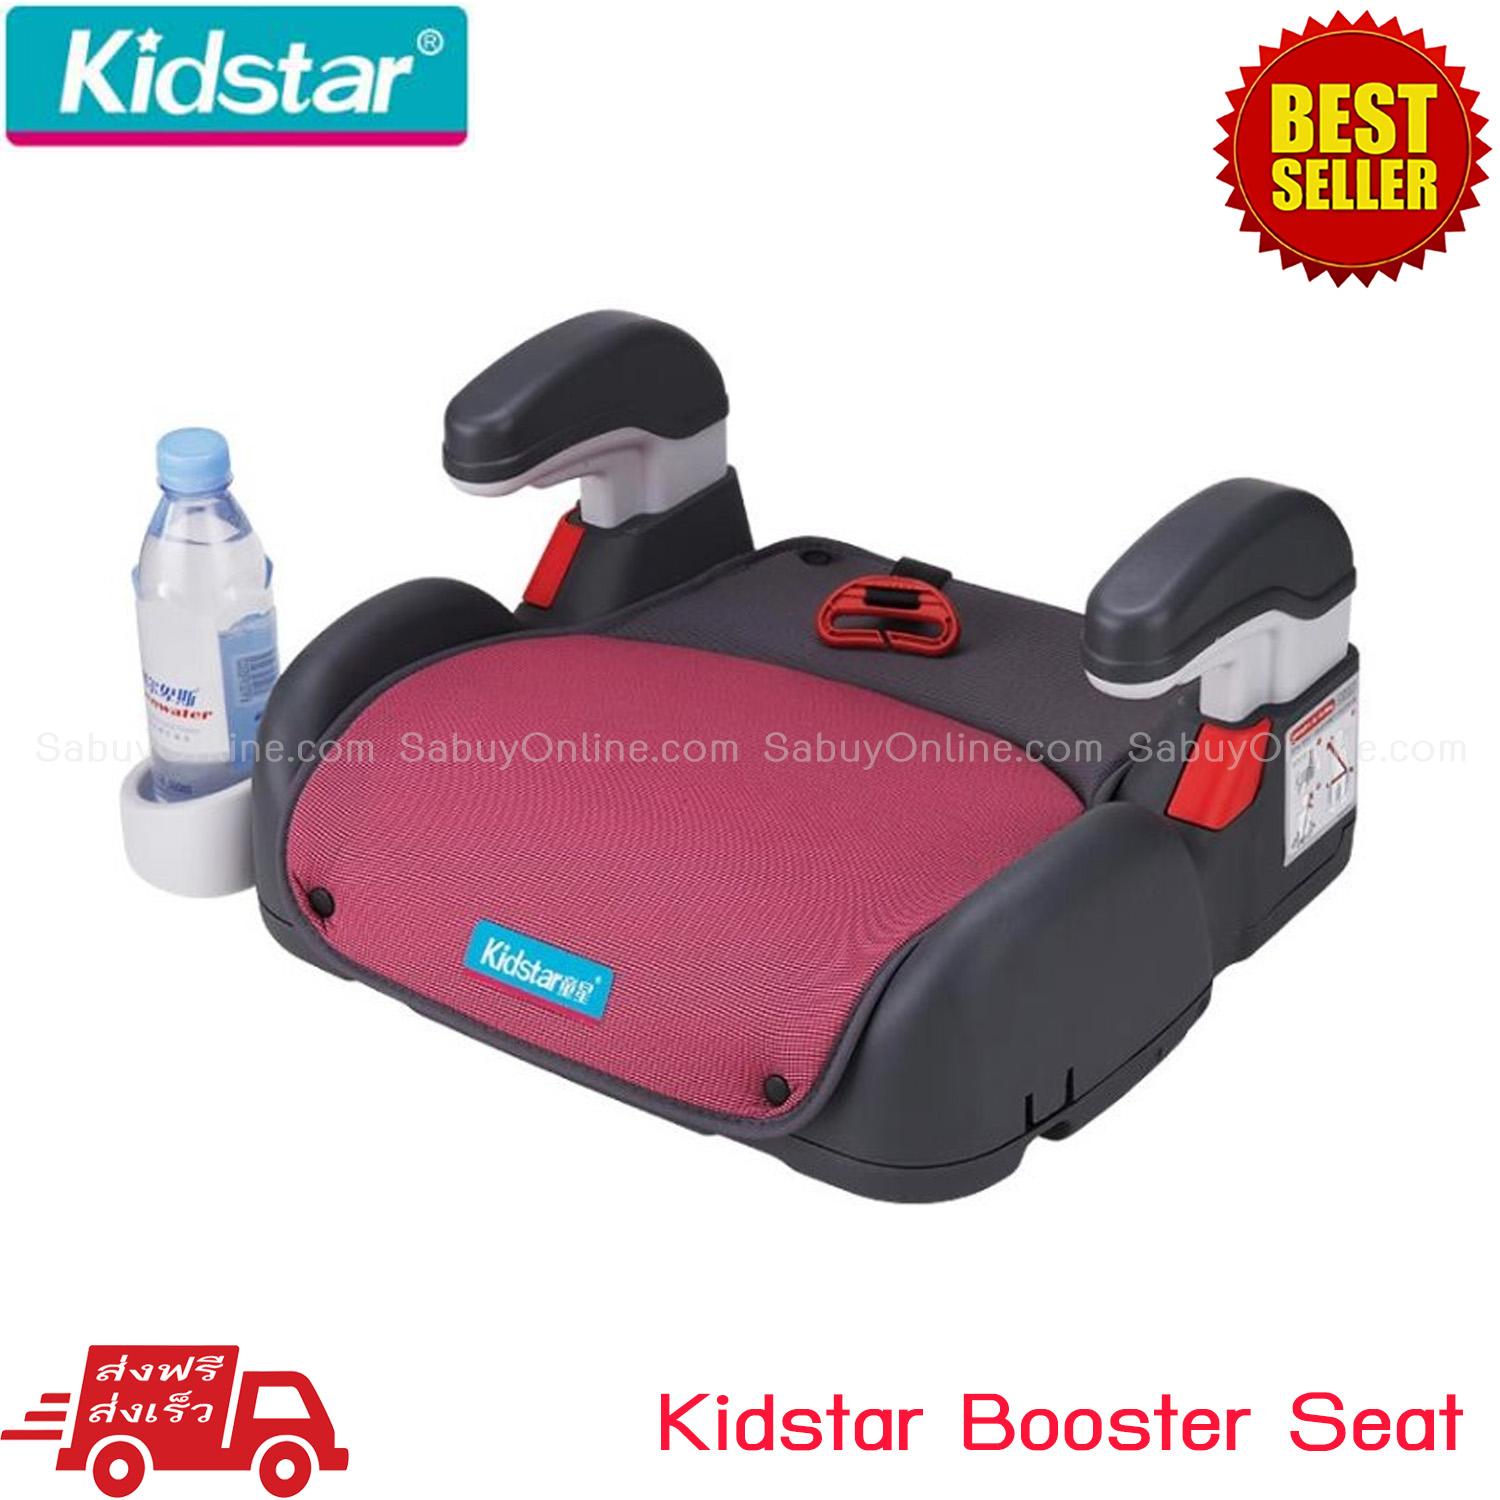 Kidstar Booster Seat สำหรับเด็กน้ำหนัก 18 - 45 กก.